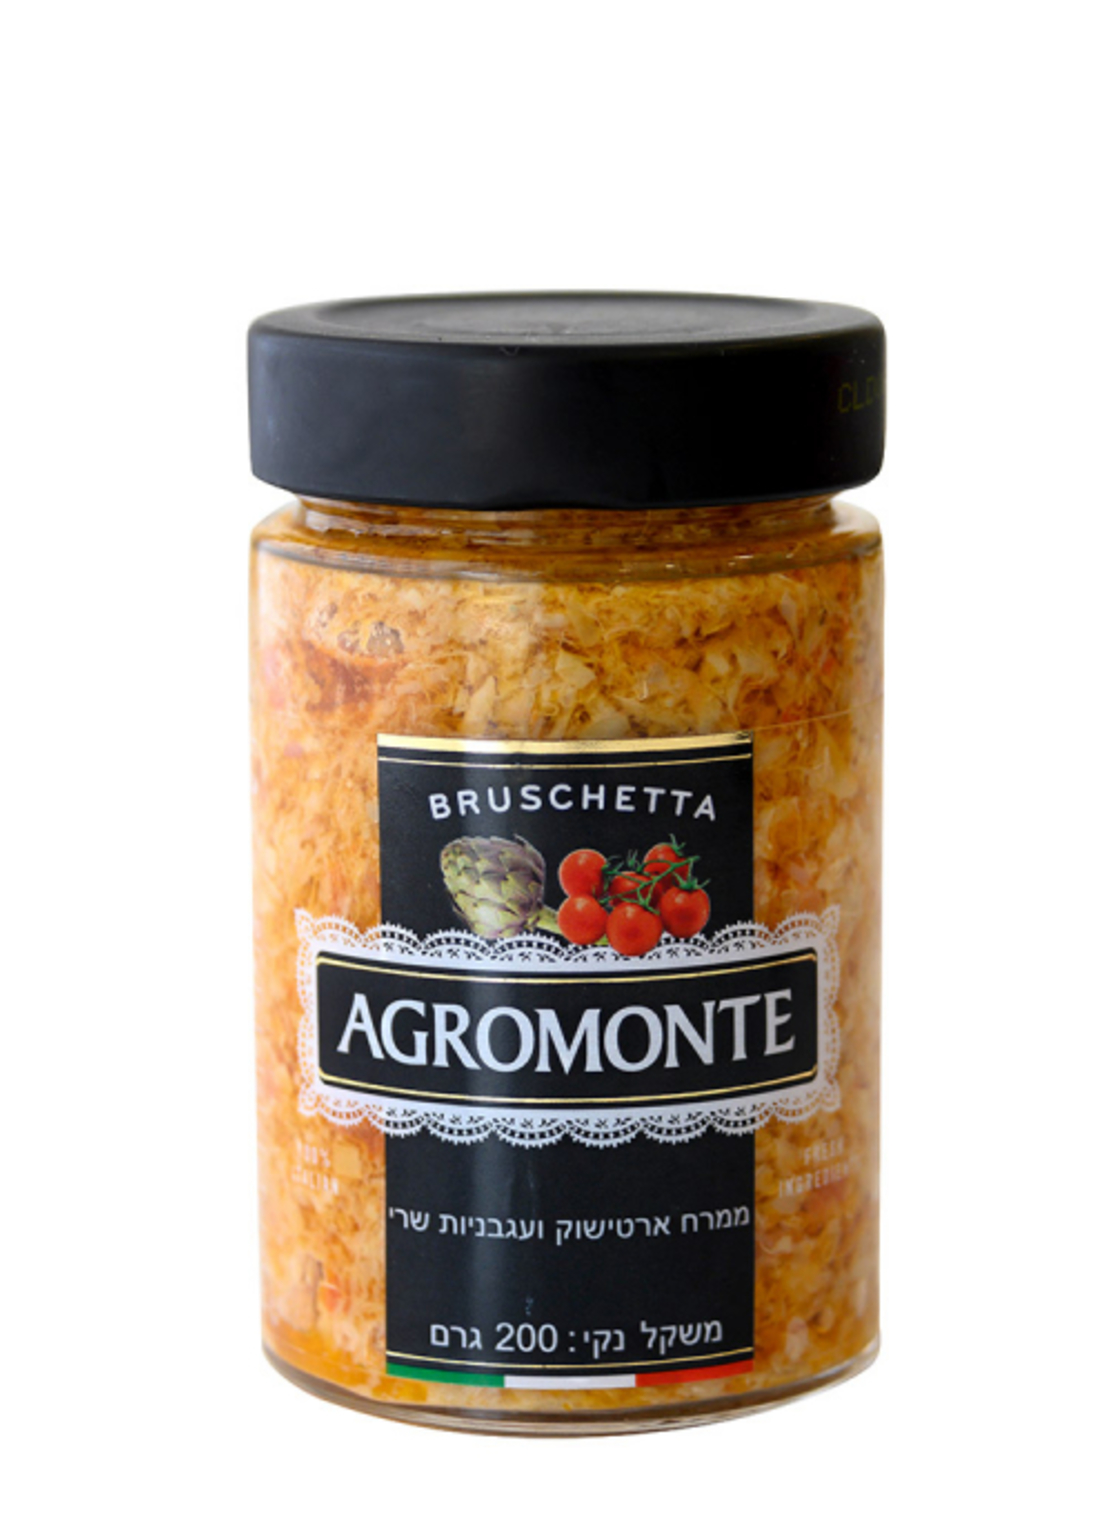 אגרומונטה - ממרח ארטישוק ועגבניות שרי 200 גרם